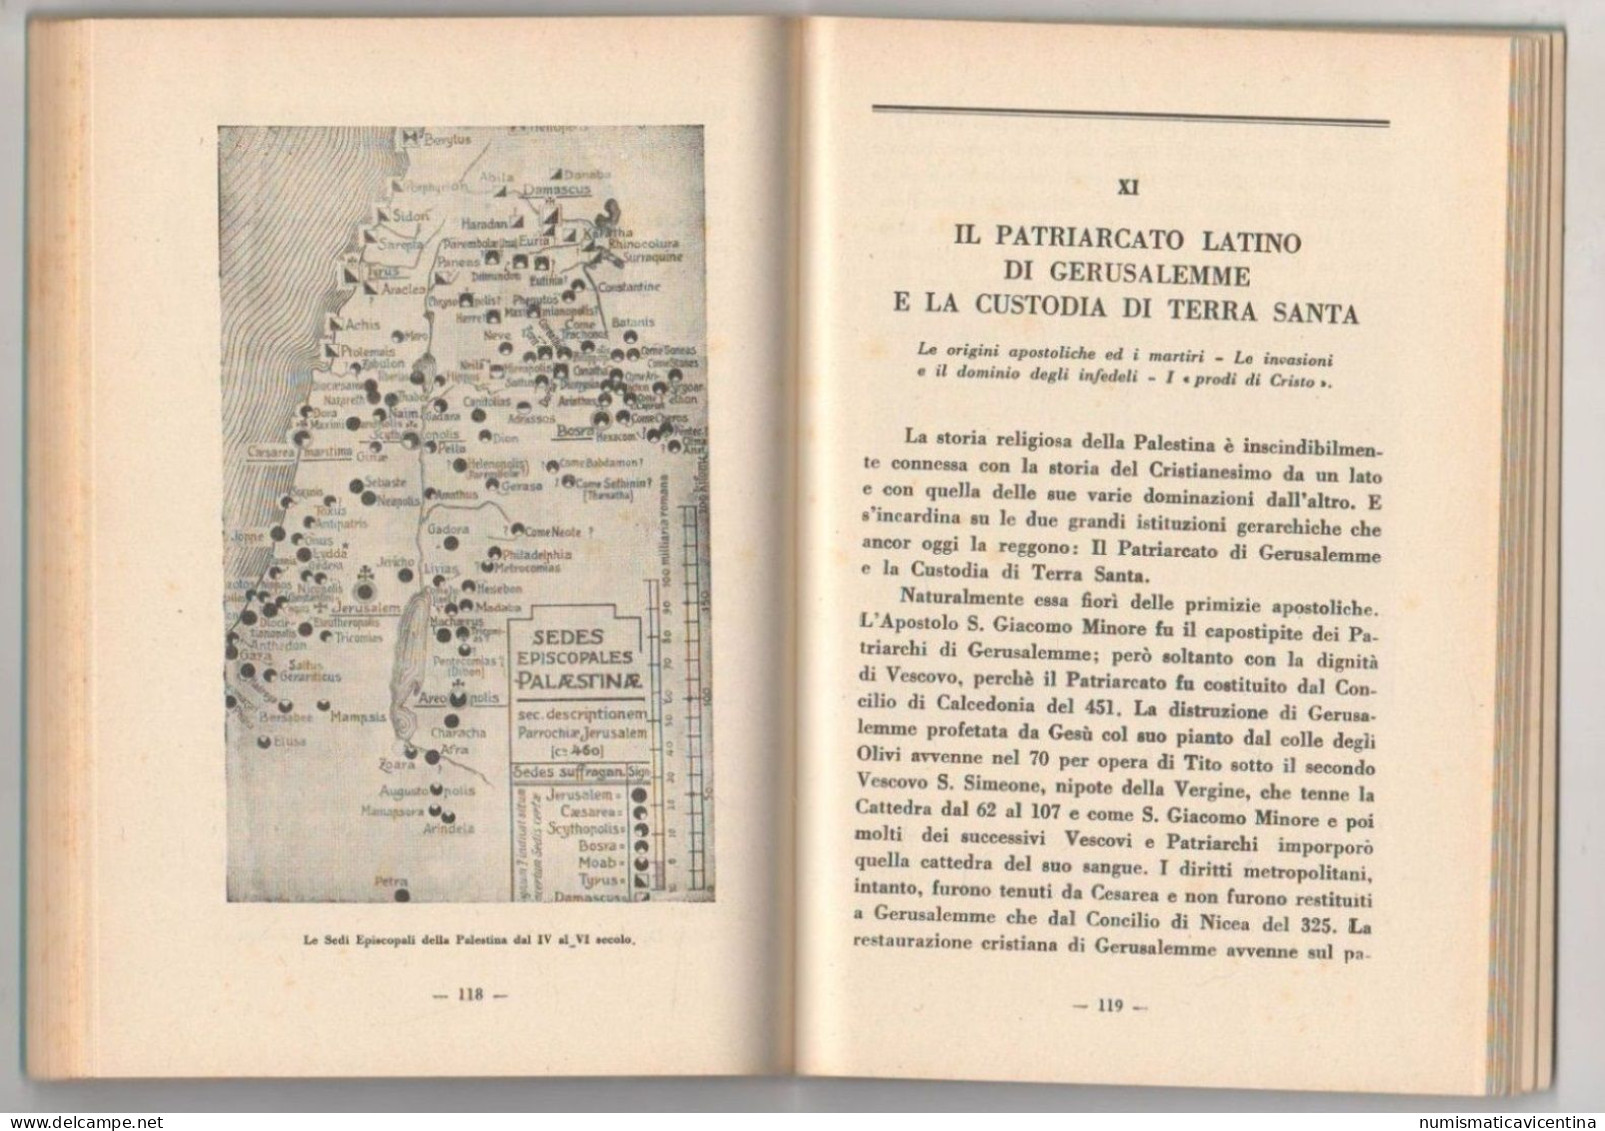 La PALESTINA Nella GUERRA Del Mediterraneo Di G. De Mori Edizione 1941 Bozze Di Stampa - Historia, Filosofía Y Geografía